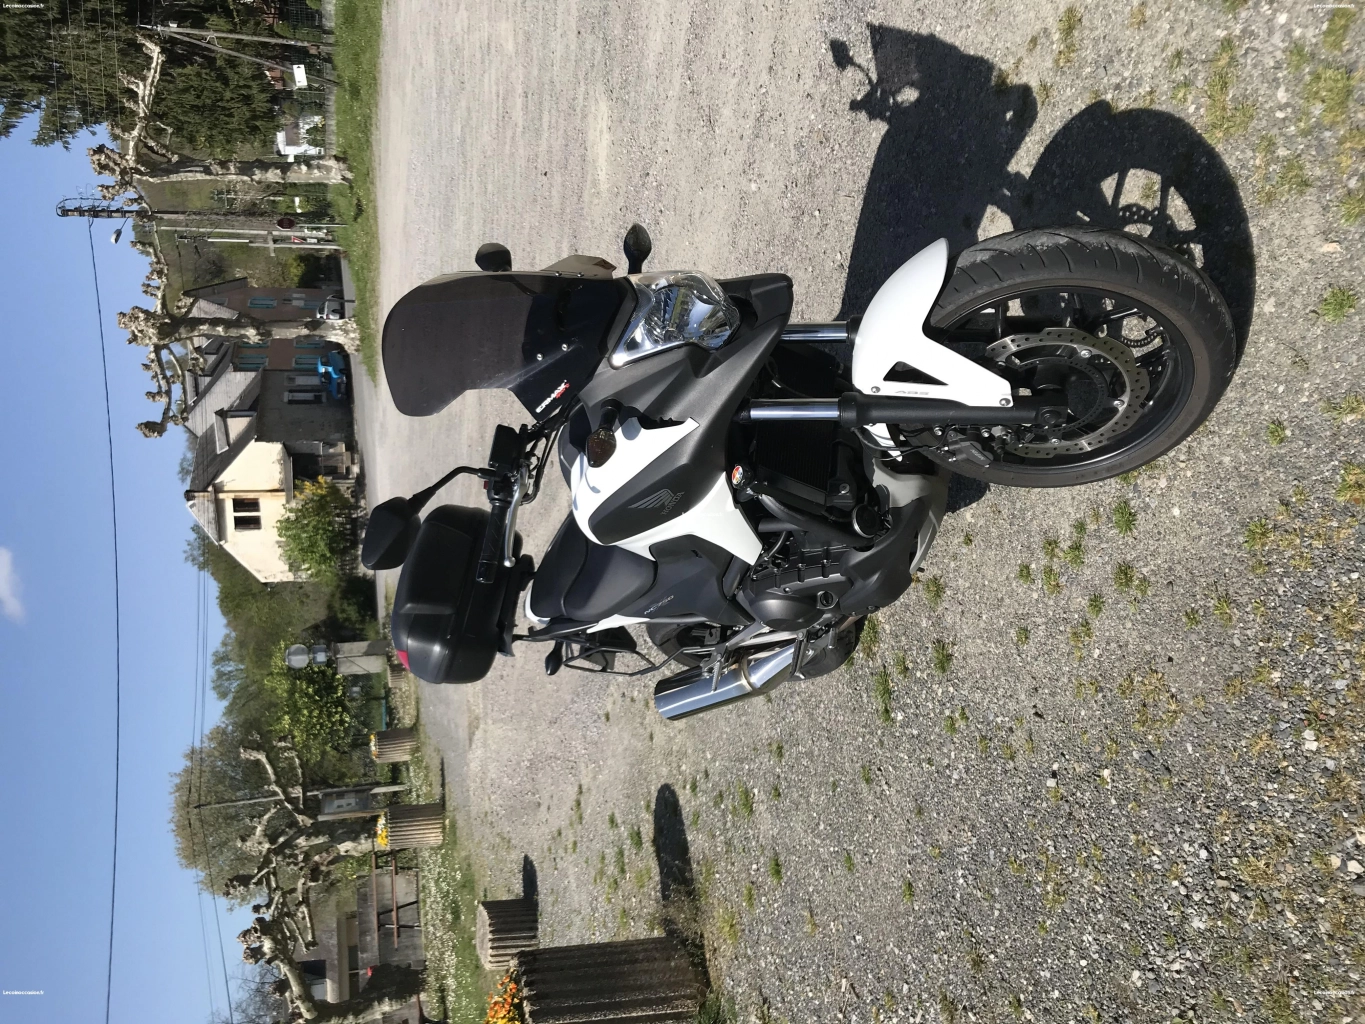 A vendre moto Nc750xdt Honda